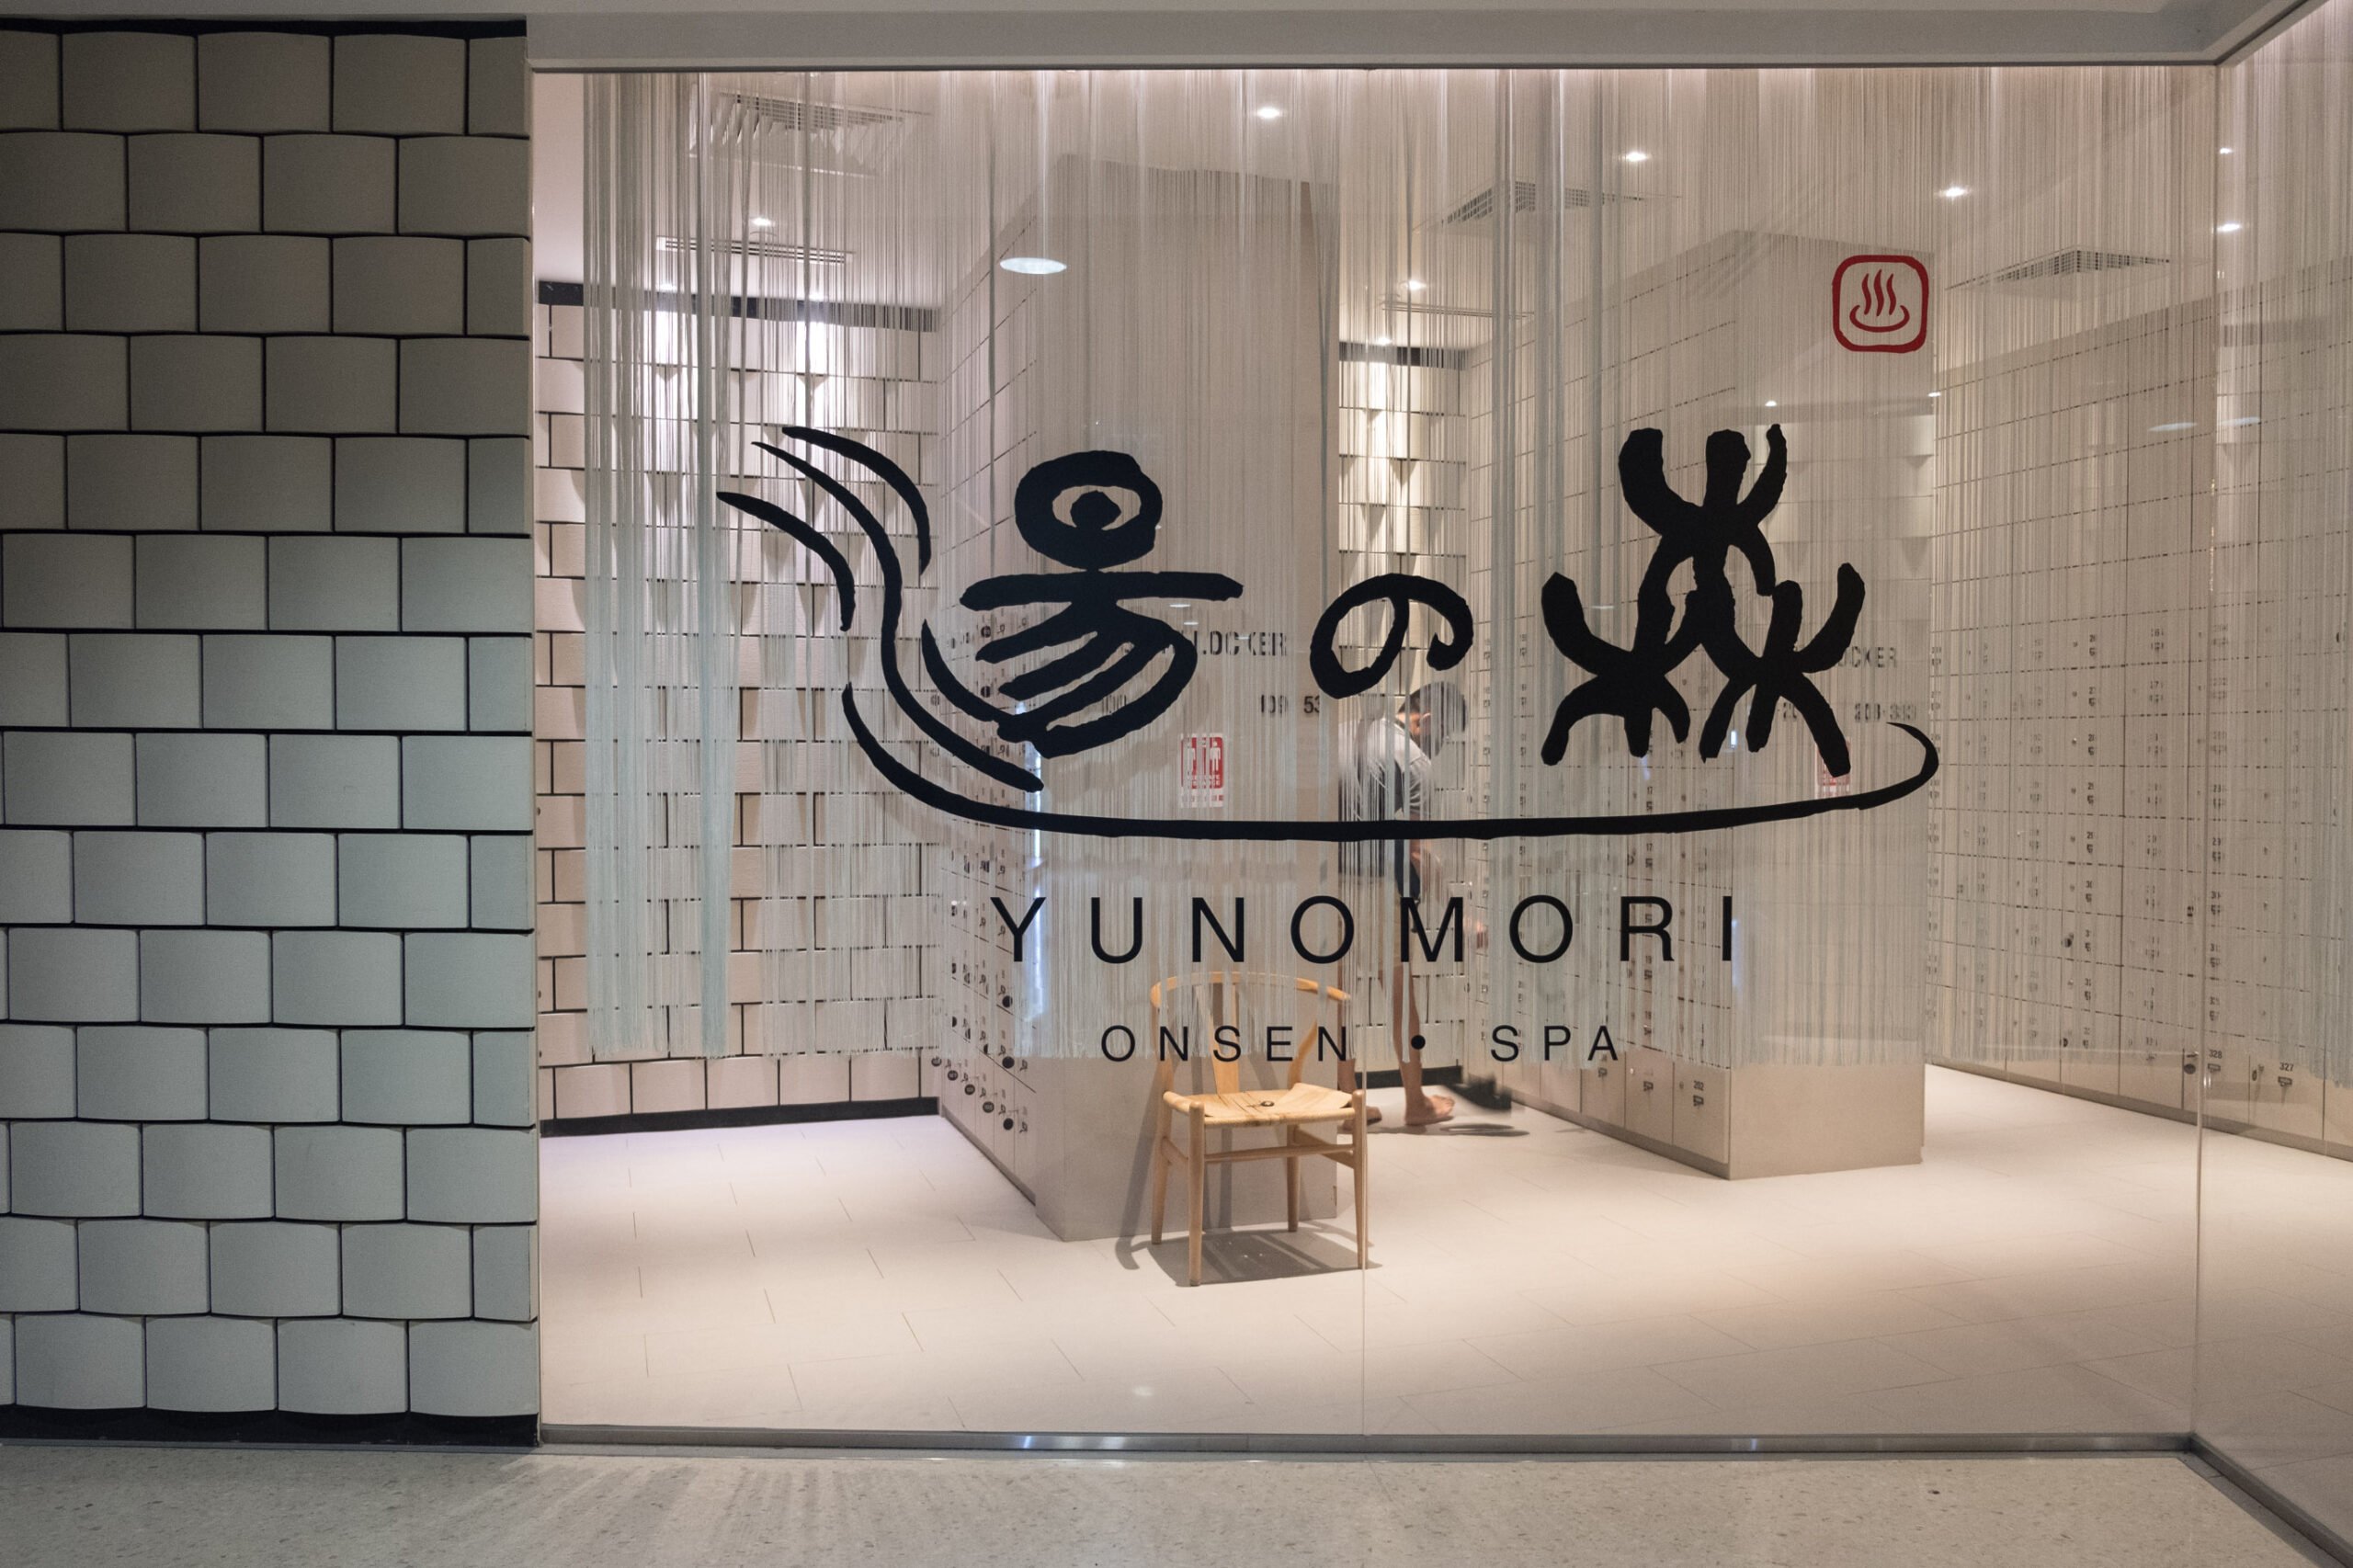 The entrance to Yunomori